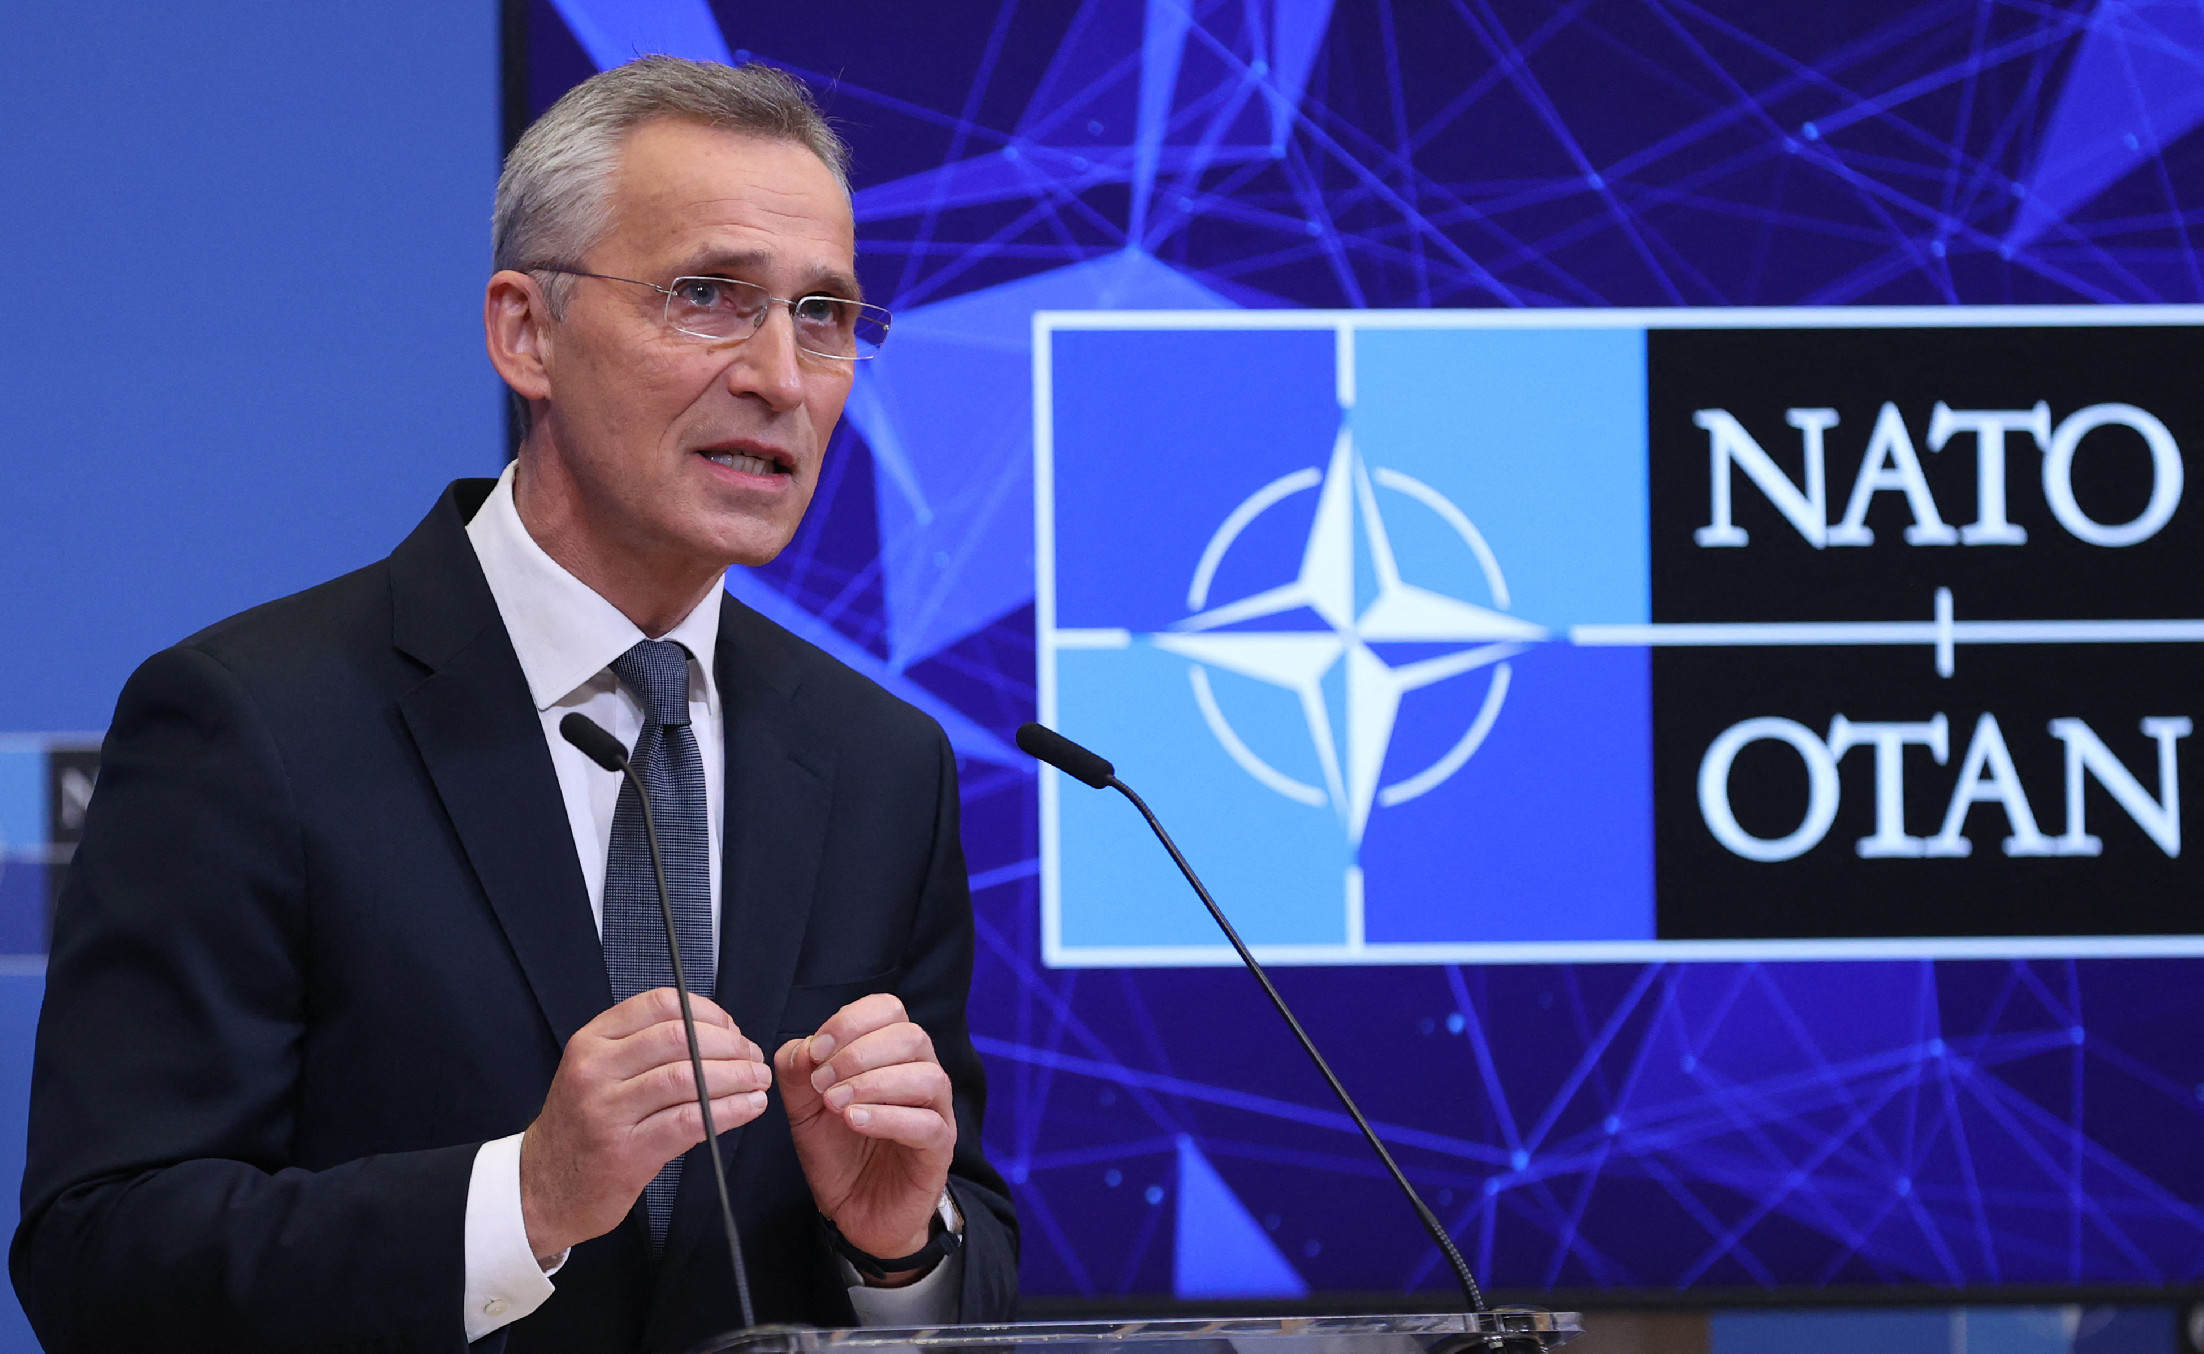 A NATO elküldte írásbeli válaszát Oroszország biztonsági garanciaigényeire